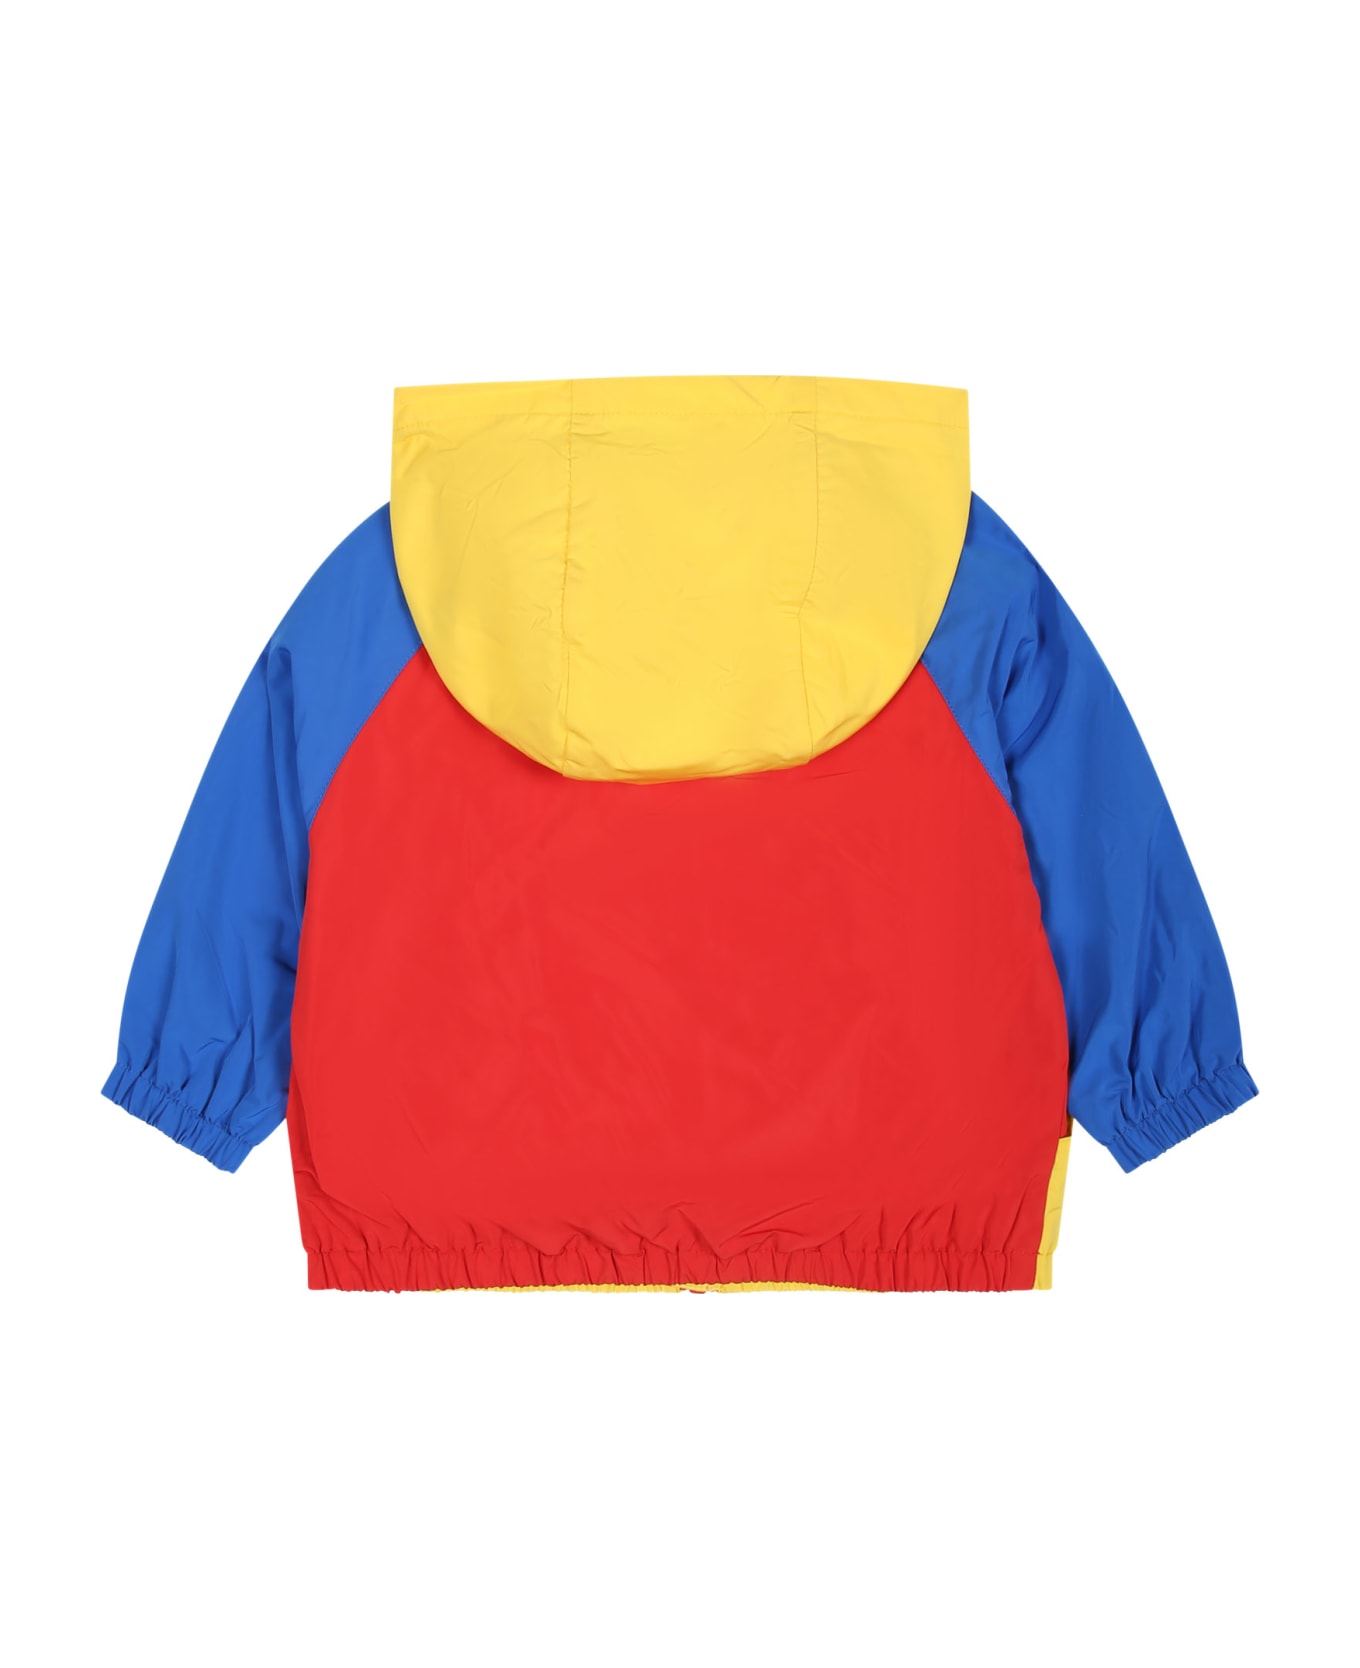 Moschino Multicolor Windbreaker For Baby Boy With Teddy Bear - Multicolor